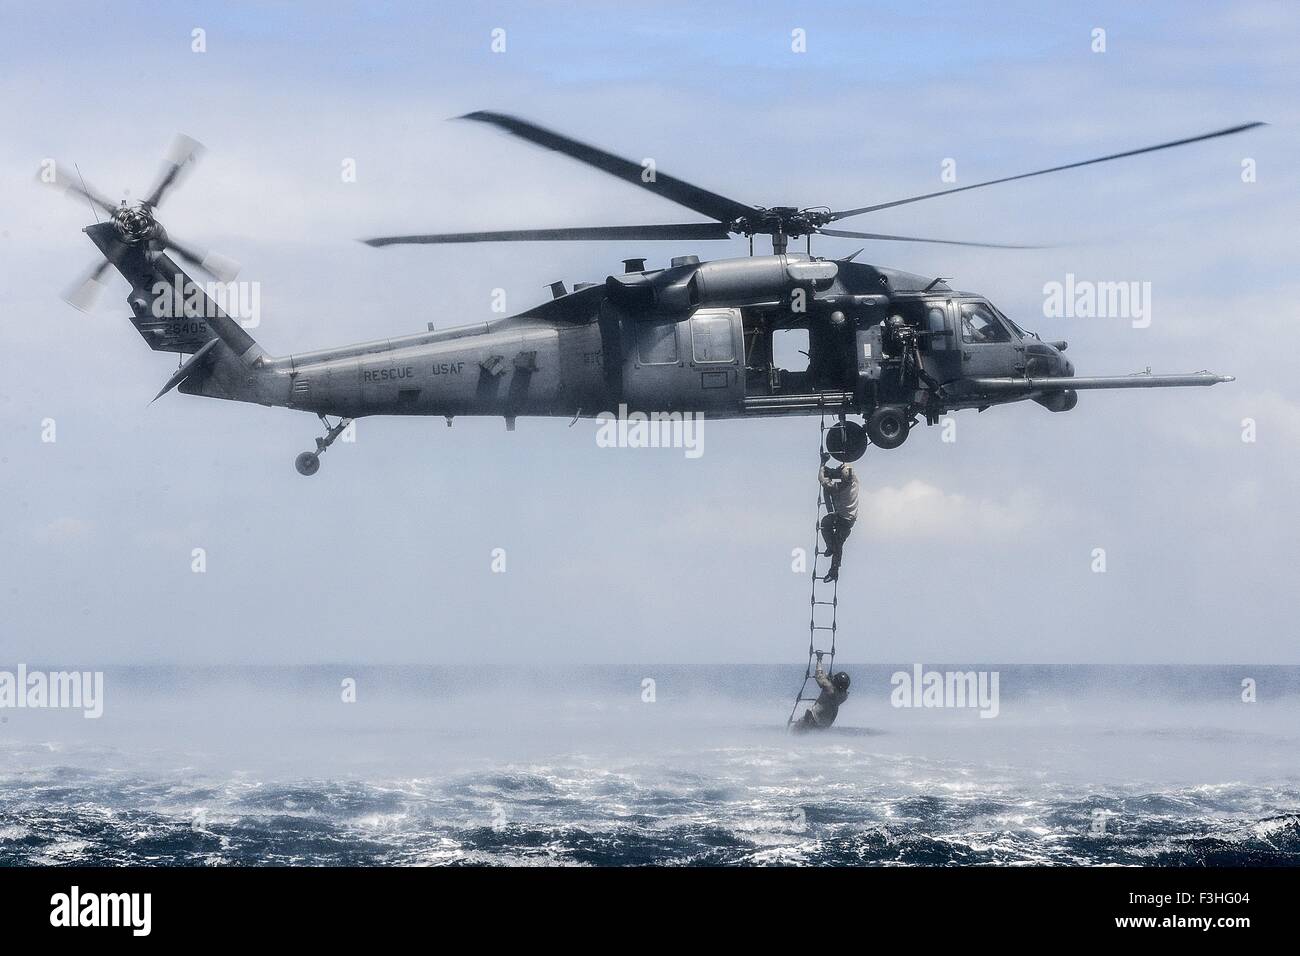 Stati Uniti Air Force delle forze speciali rescue commandos saltare da un HH-60G Pave Hawk elicottero nell'oceano durante la formazione anfibio chiamato helo-casting Ottobre 7, 2015 a Okinawa, Giappone. 320STS aviatori di eseguire la formazione anfibio Foto Stock